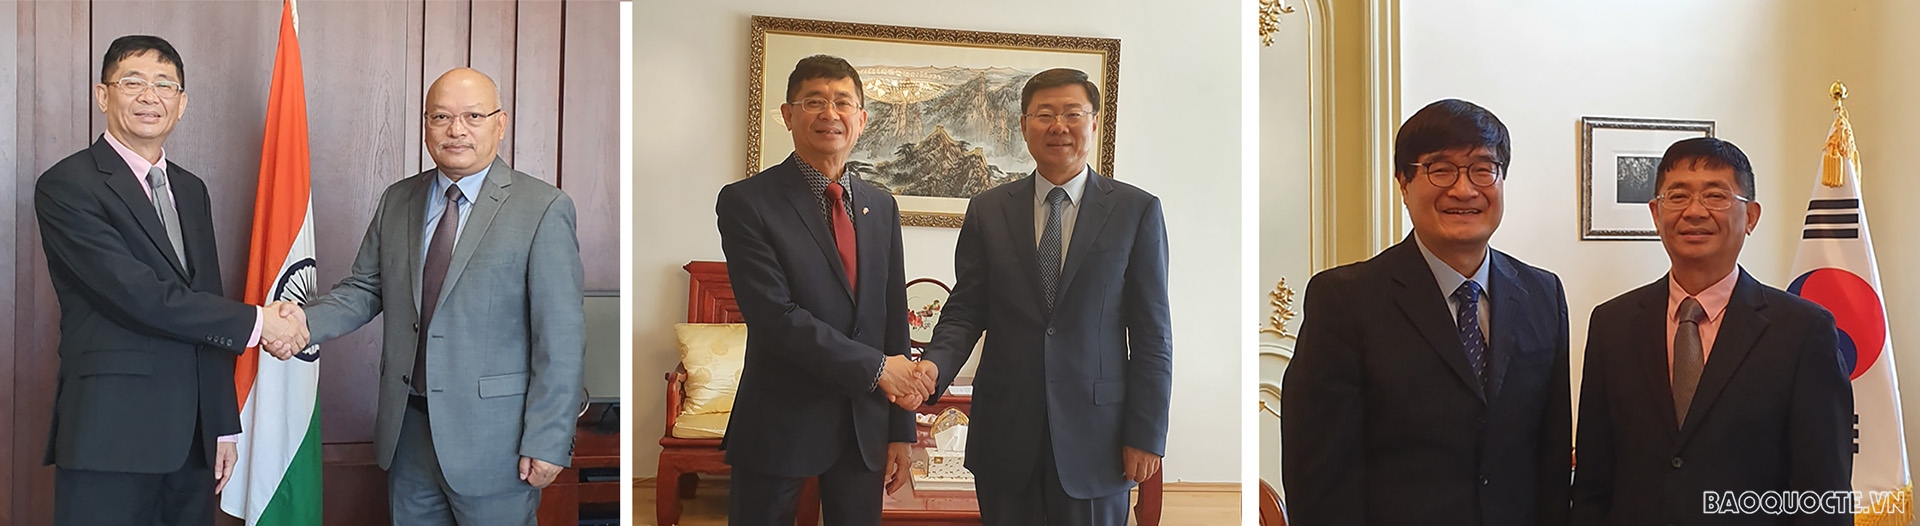 Ảnh từ trái qua phải: Đại sứ Việt Nam tại Slovakia Nguyễn Tuấn chào xã giao các Đại sứ Ấn Độ, Trung Quốc và Hàn Quốc.